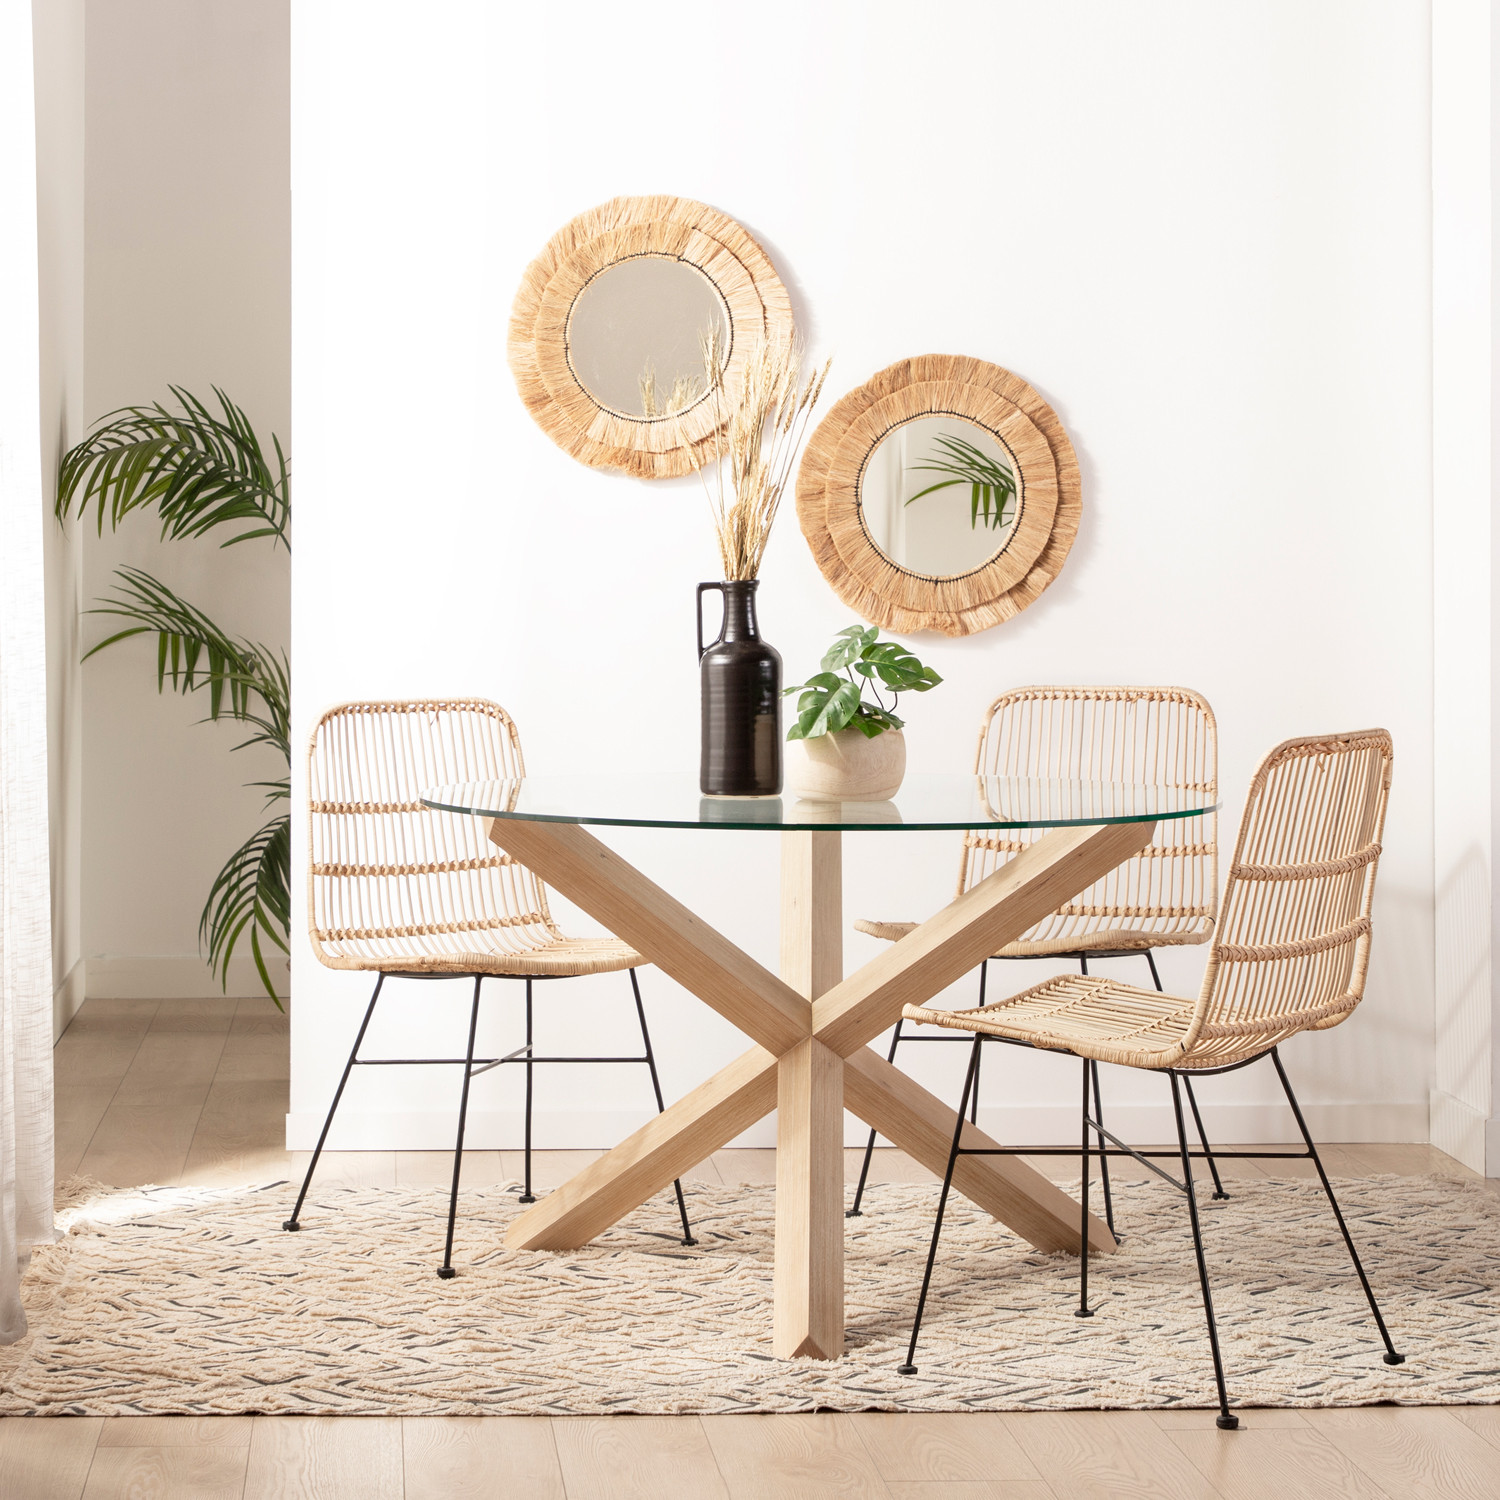 La mesa de comedor redonda Isak es la mesa ideal con la que completar la decoración de tu salón